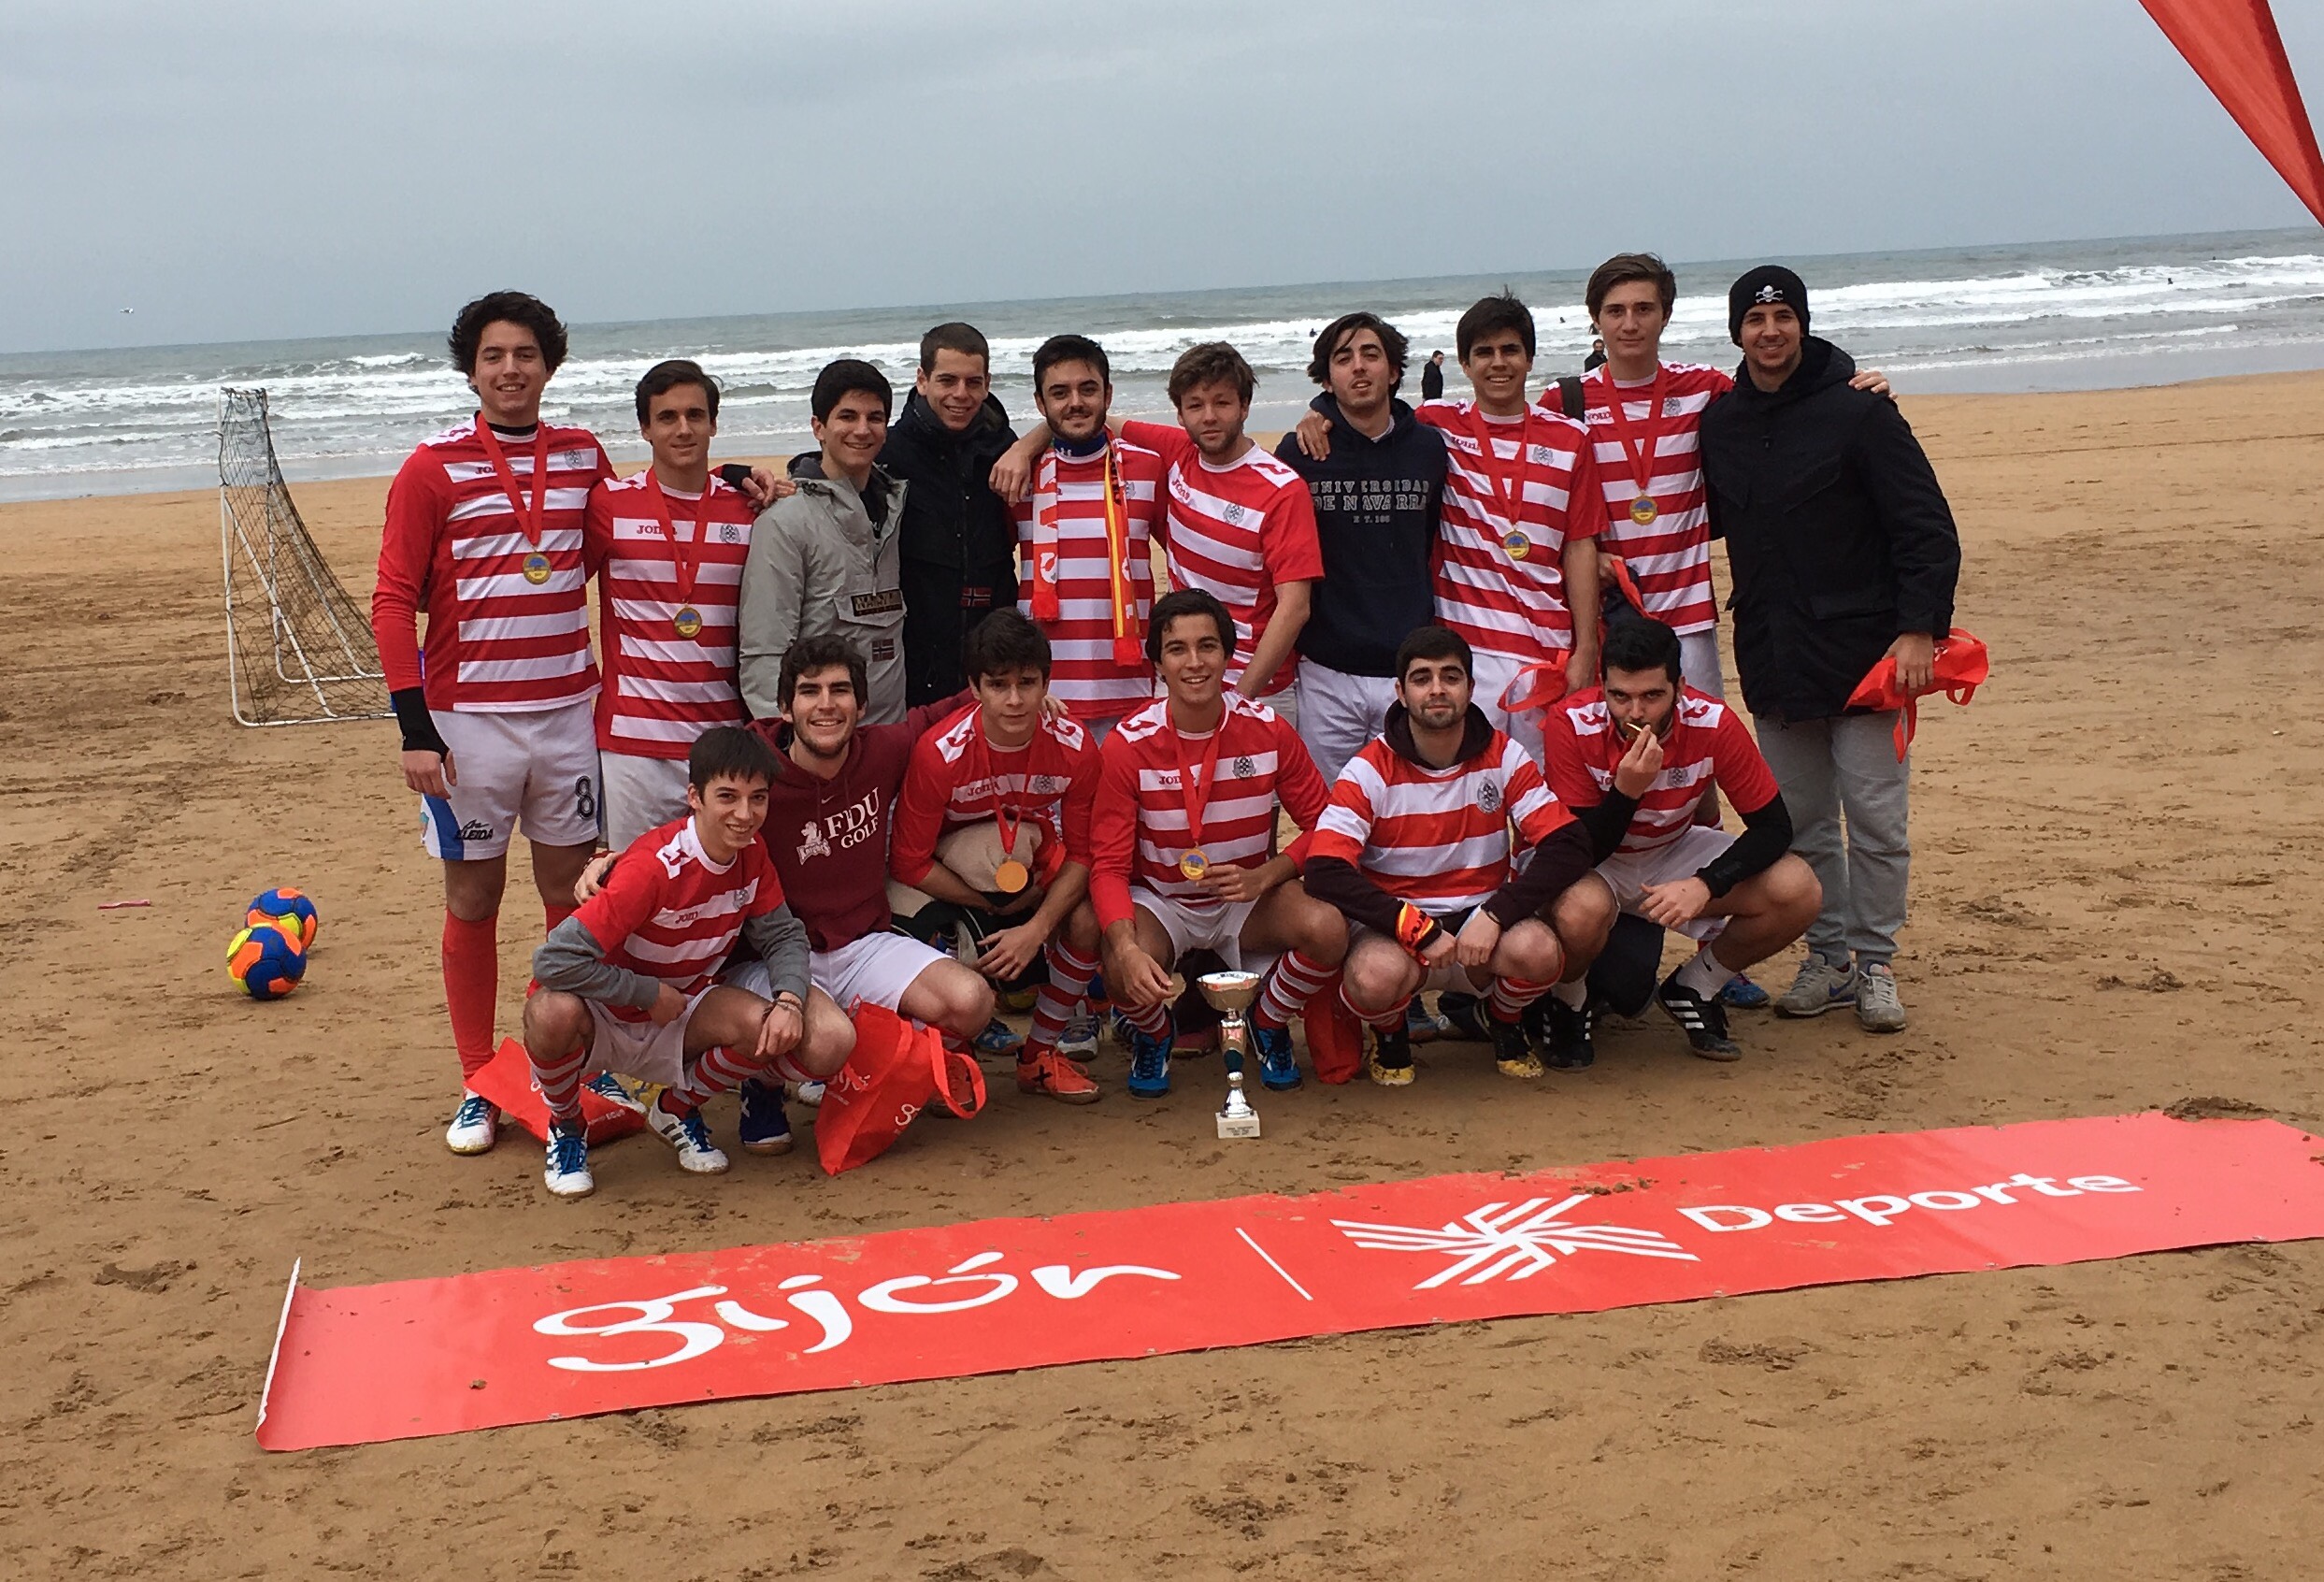 San Pablo campeón de futbol-playa en Gijón 